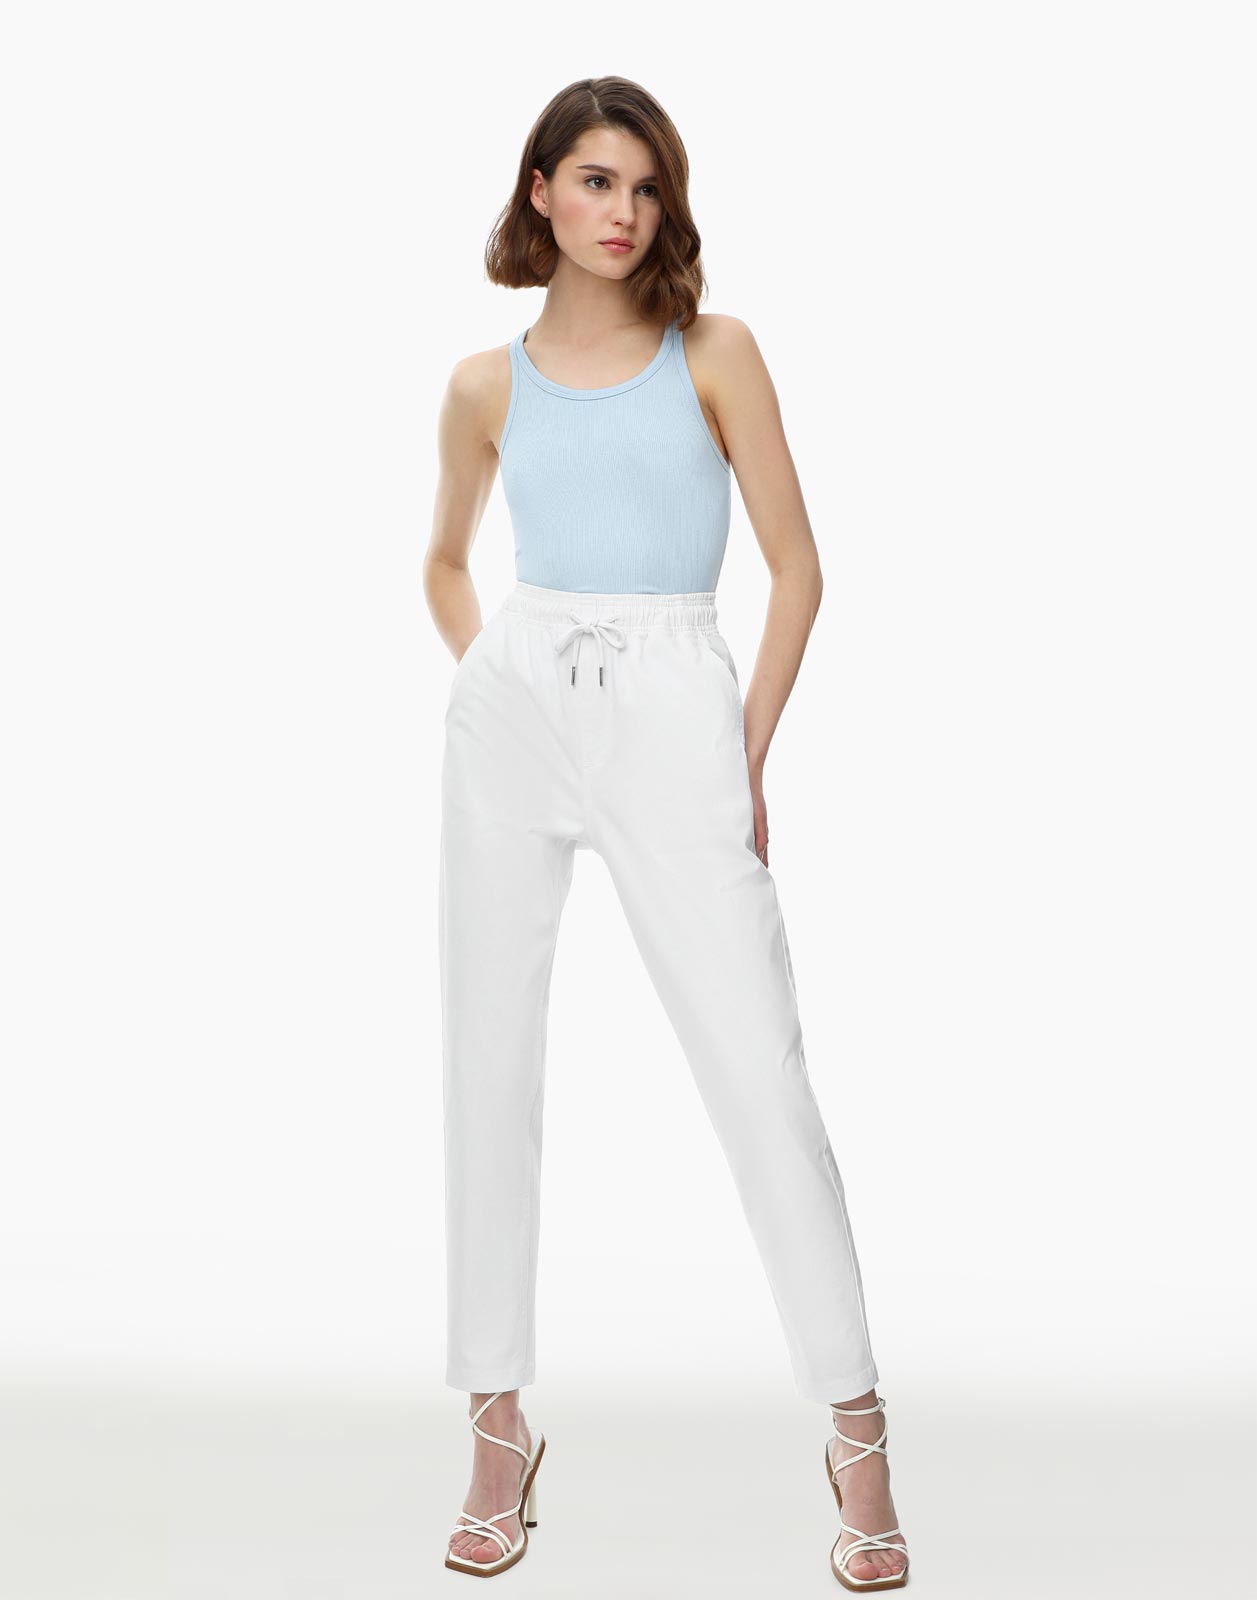 Джинсы женские Gloria Jeans GJN026682 белые XS